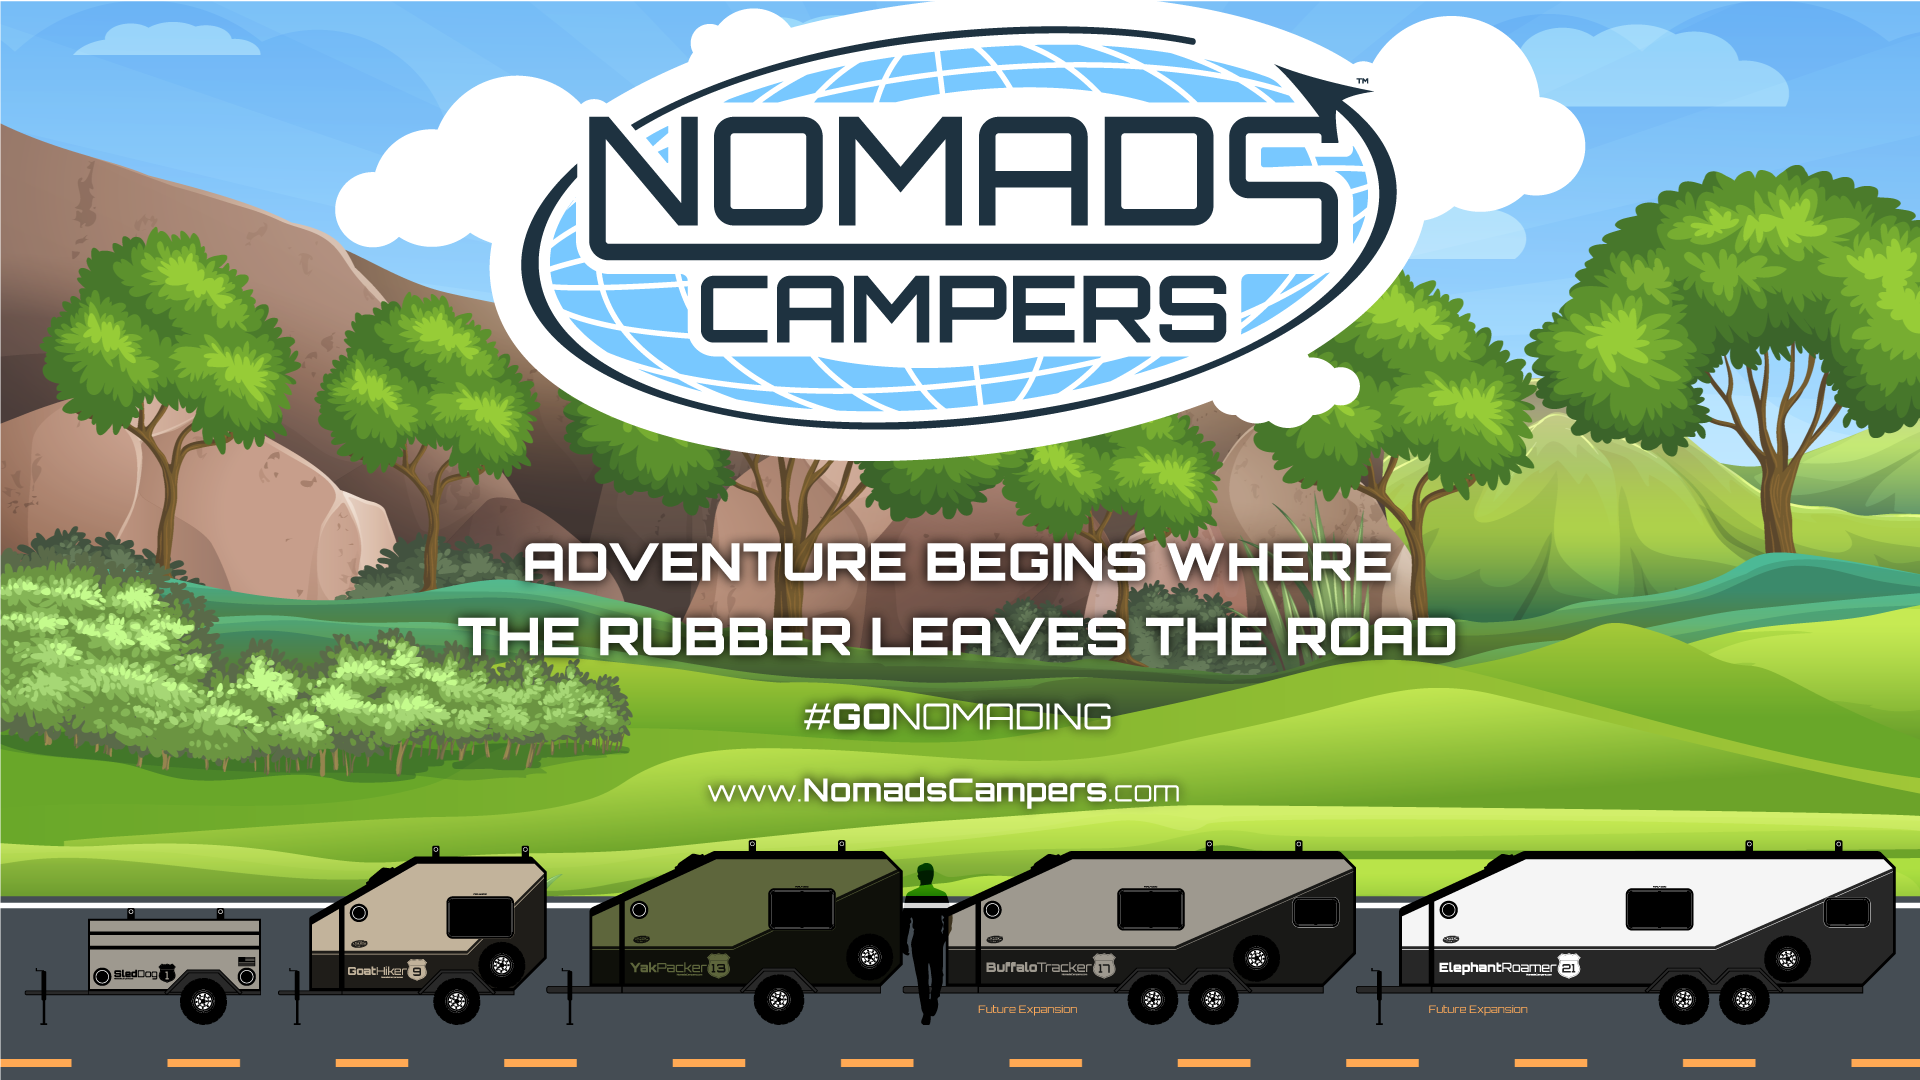 Nomads Campers